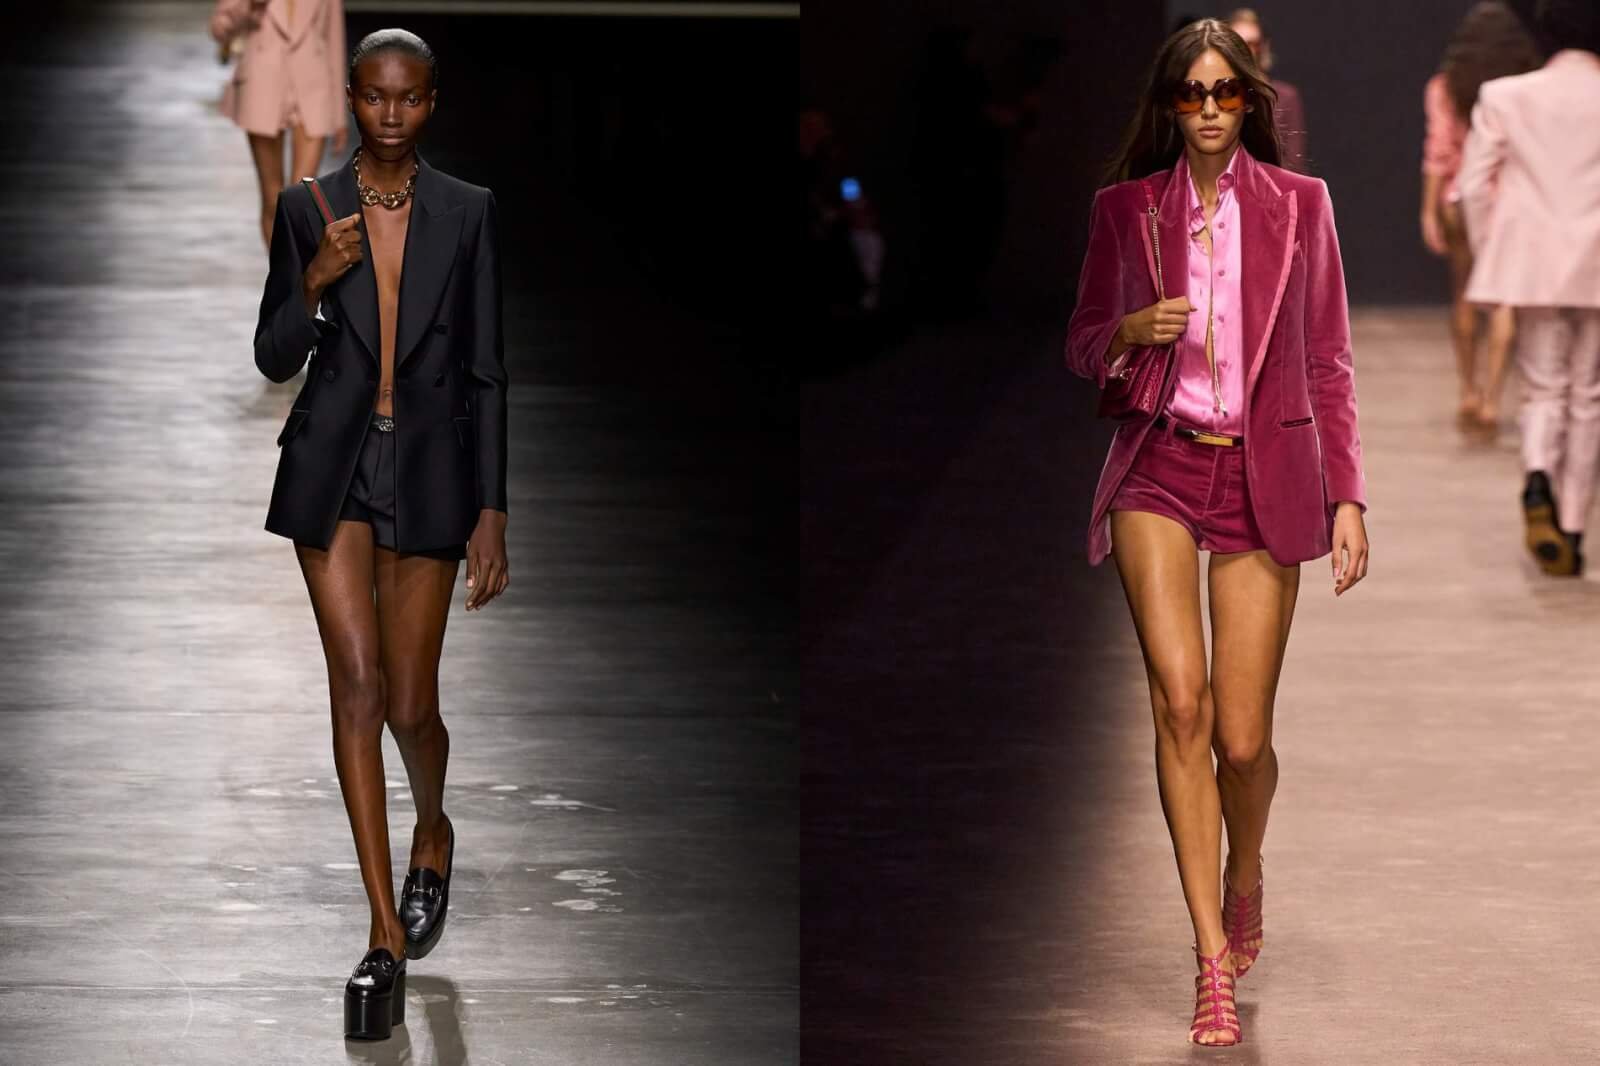 Two models walking on runway in blazers in shorts.